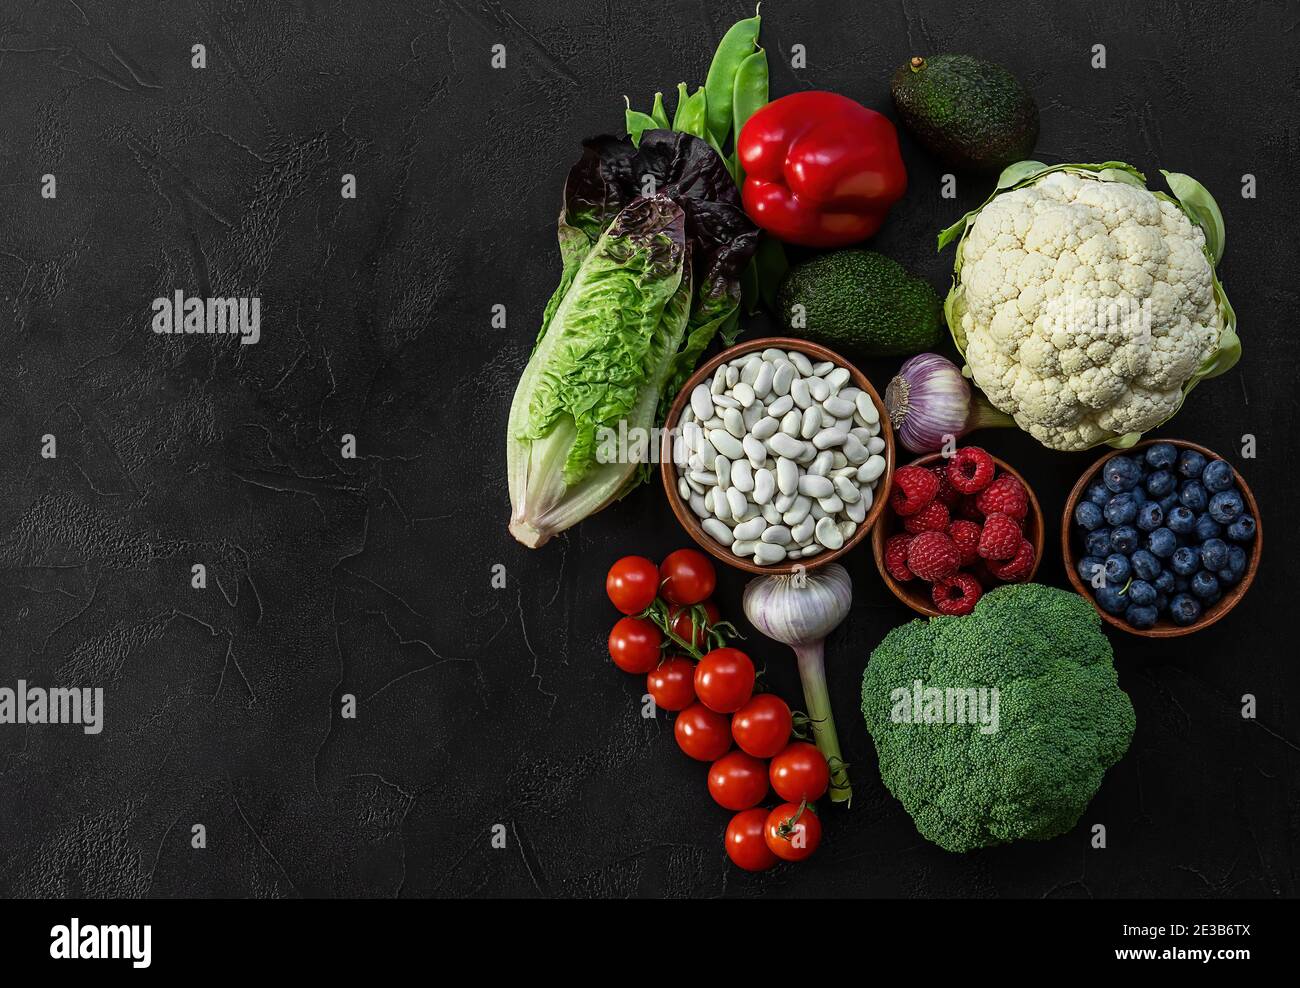 Fondo de alimentos saludables, productos de dieta a base de plantas de moda - verduras frescas crudas, bayas, y frijoles. Foto de stock